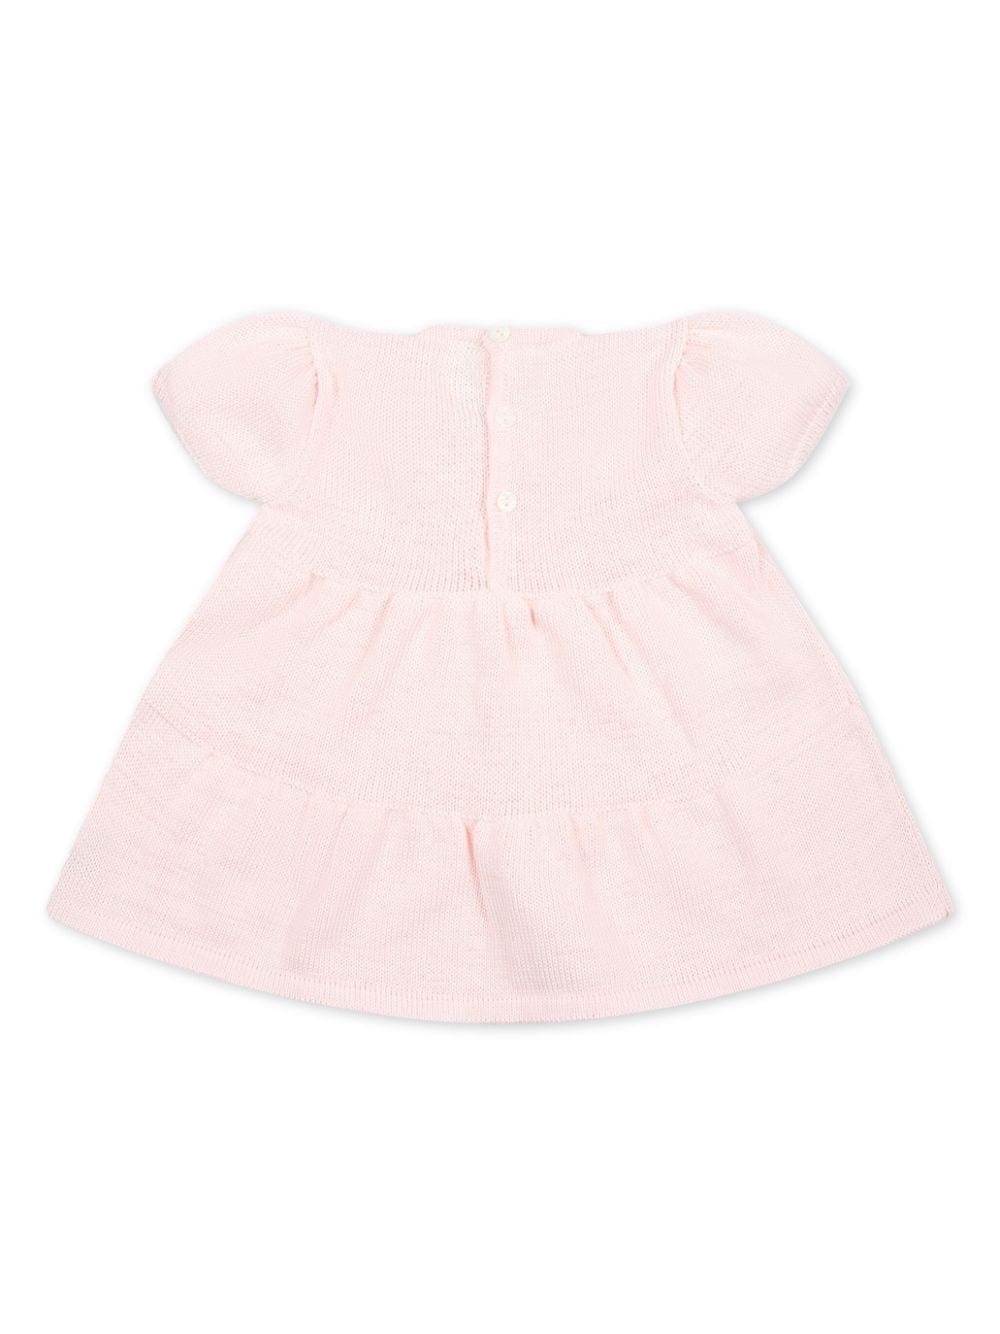 Little Bear bow knitted cotton dress - Roze